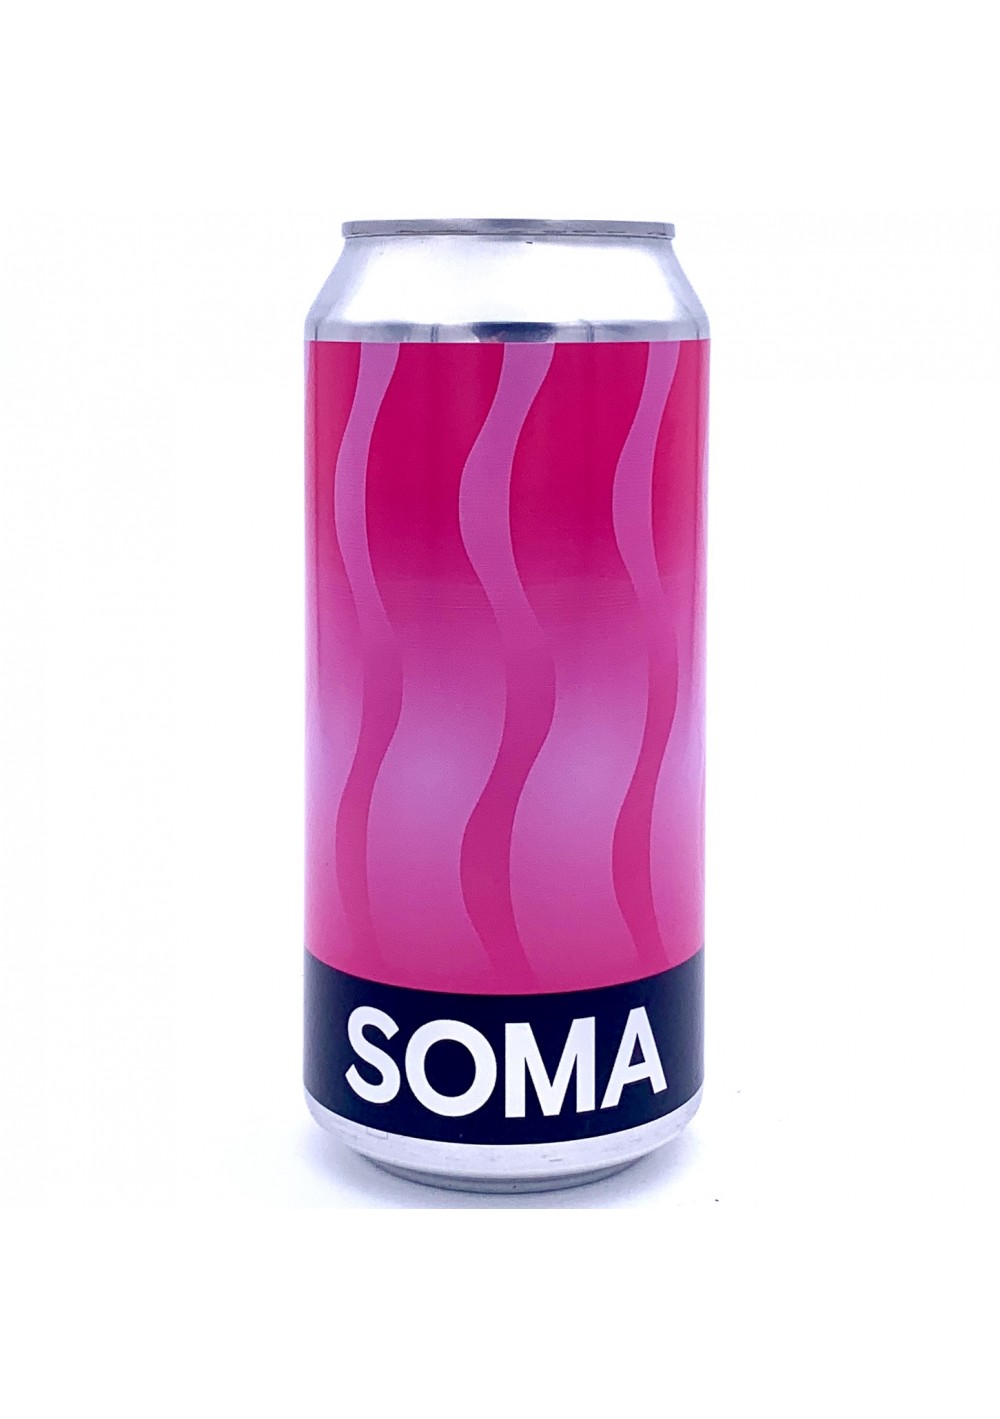 SOMA - Pink Lake - New England IPA